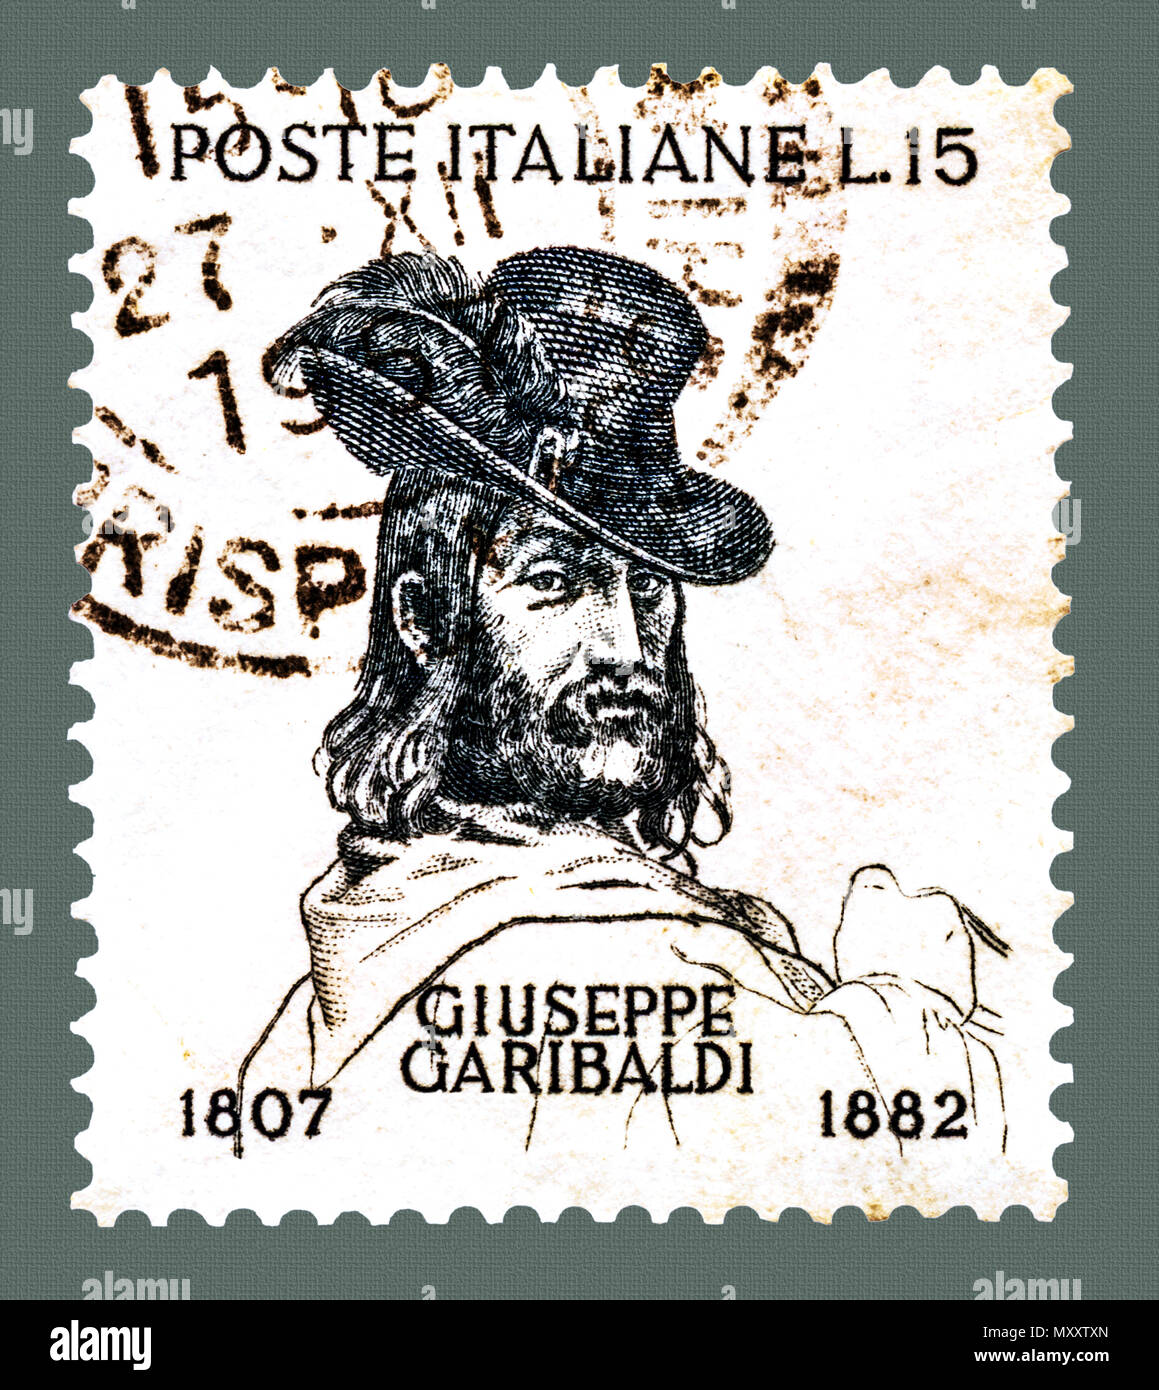 Giuseppe Garibaldi tragen Hut mit Feder: Italienische Briefmarke Stockfoto